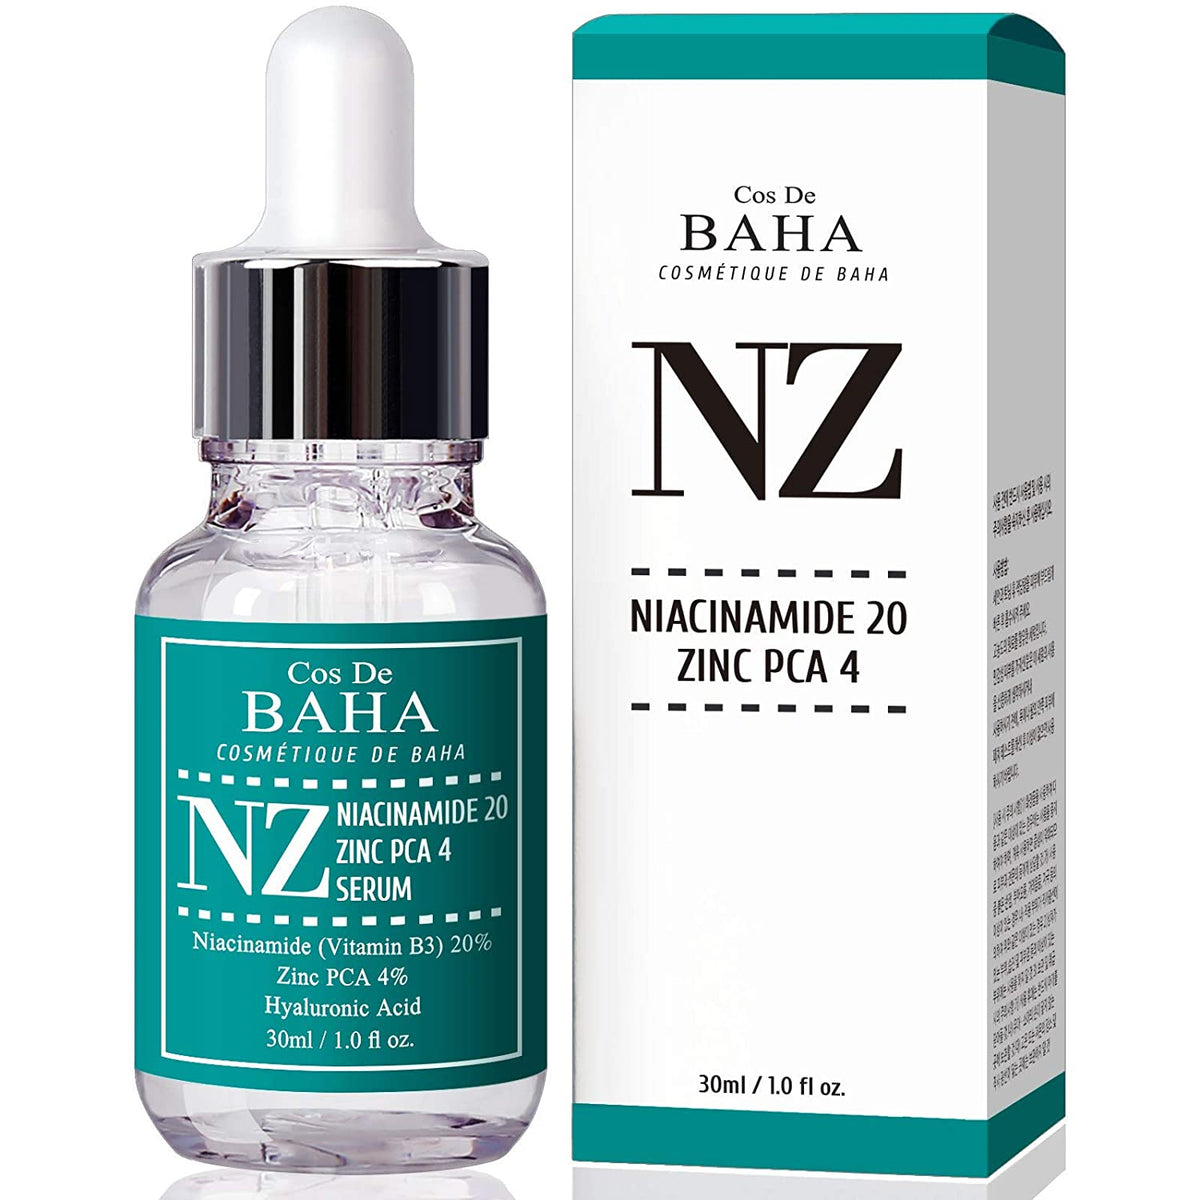 Cos de BAHA Niacinamide 20% Zinc PCA 4% (NZ) Facial Serum 30ml